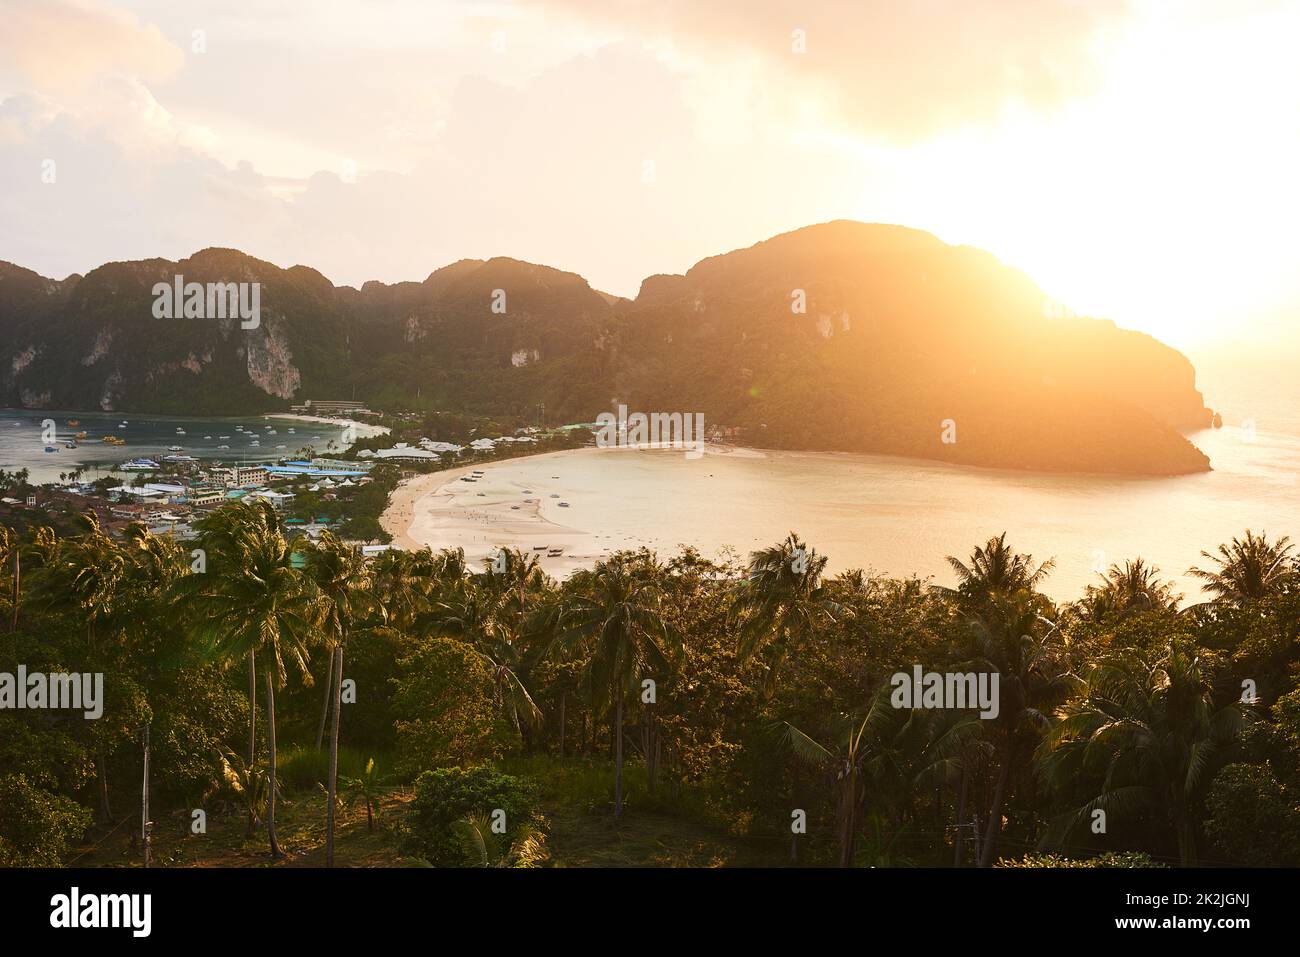 Entfliehen Sie dem Paradies. Aufnahme von einem atemberaubenden Blick auf die Insel. Stockfoto